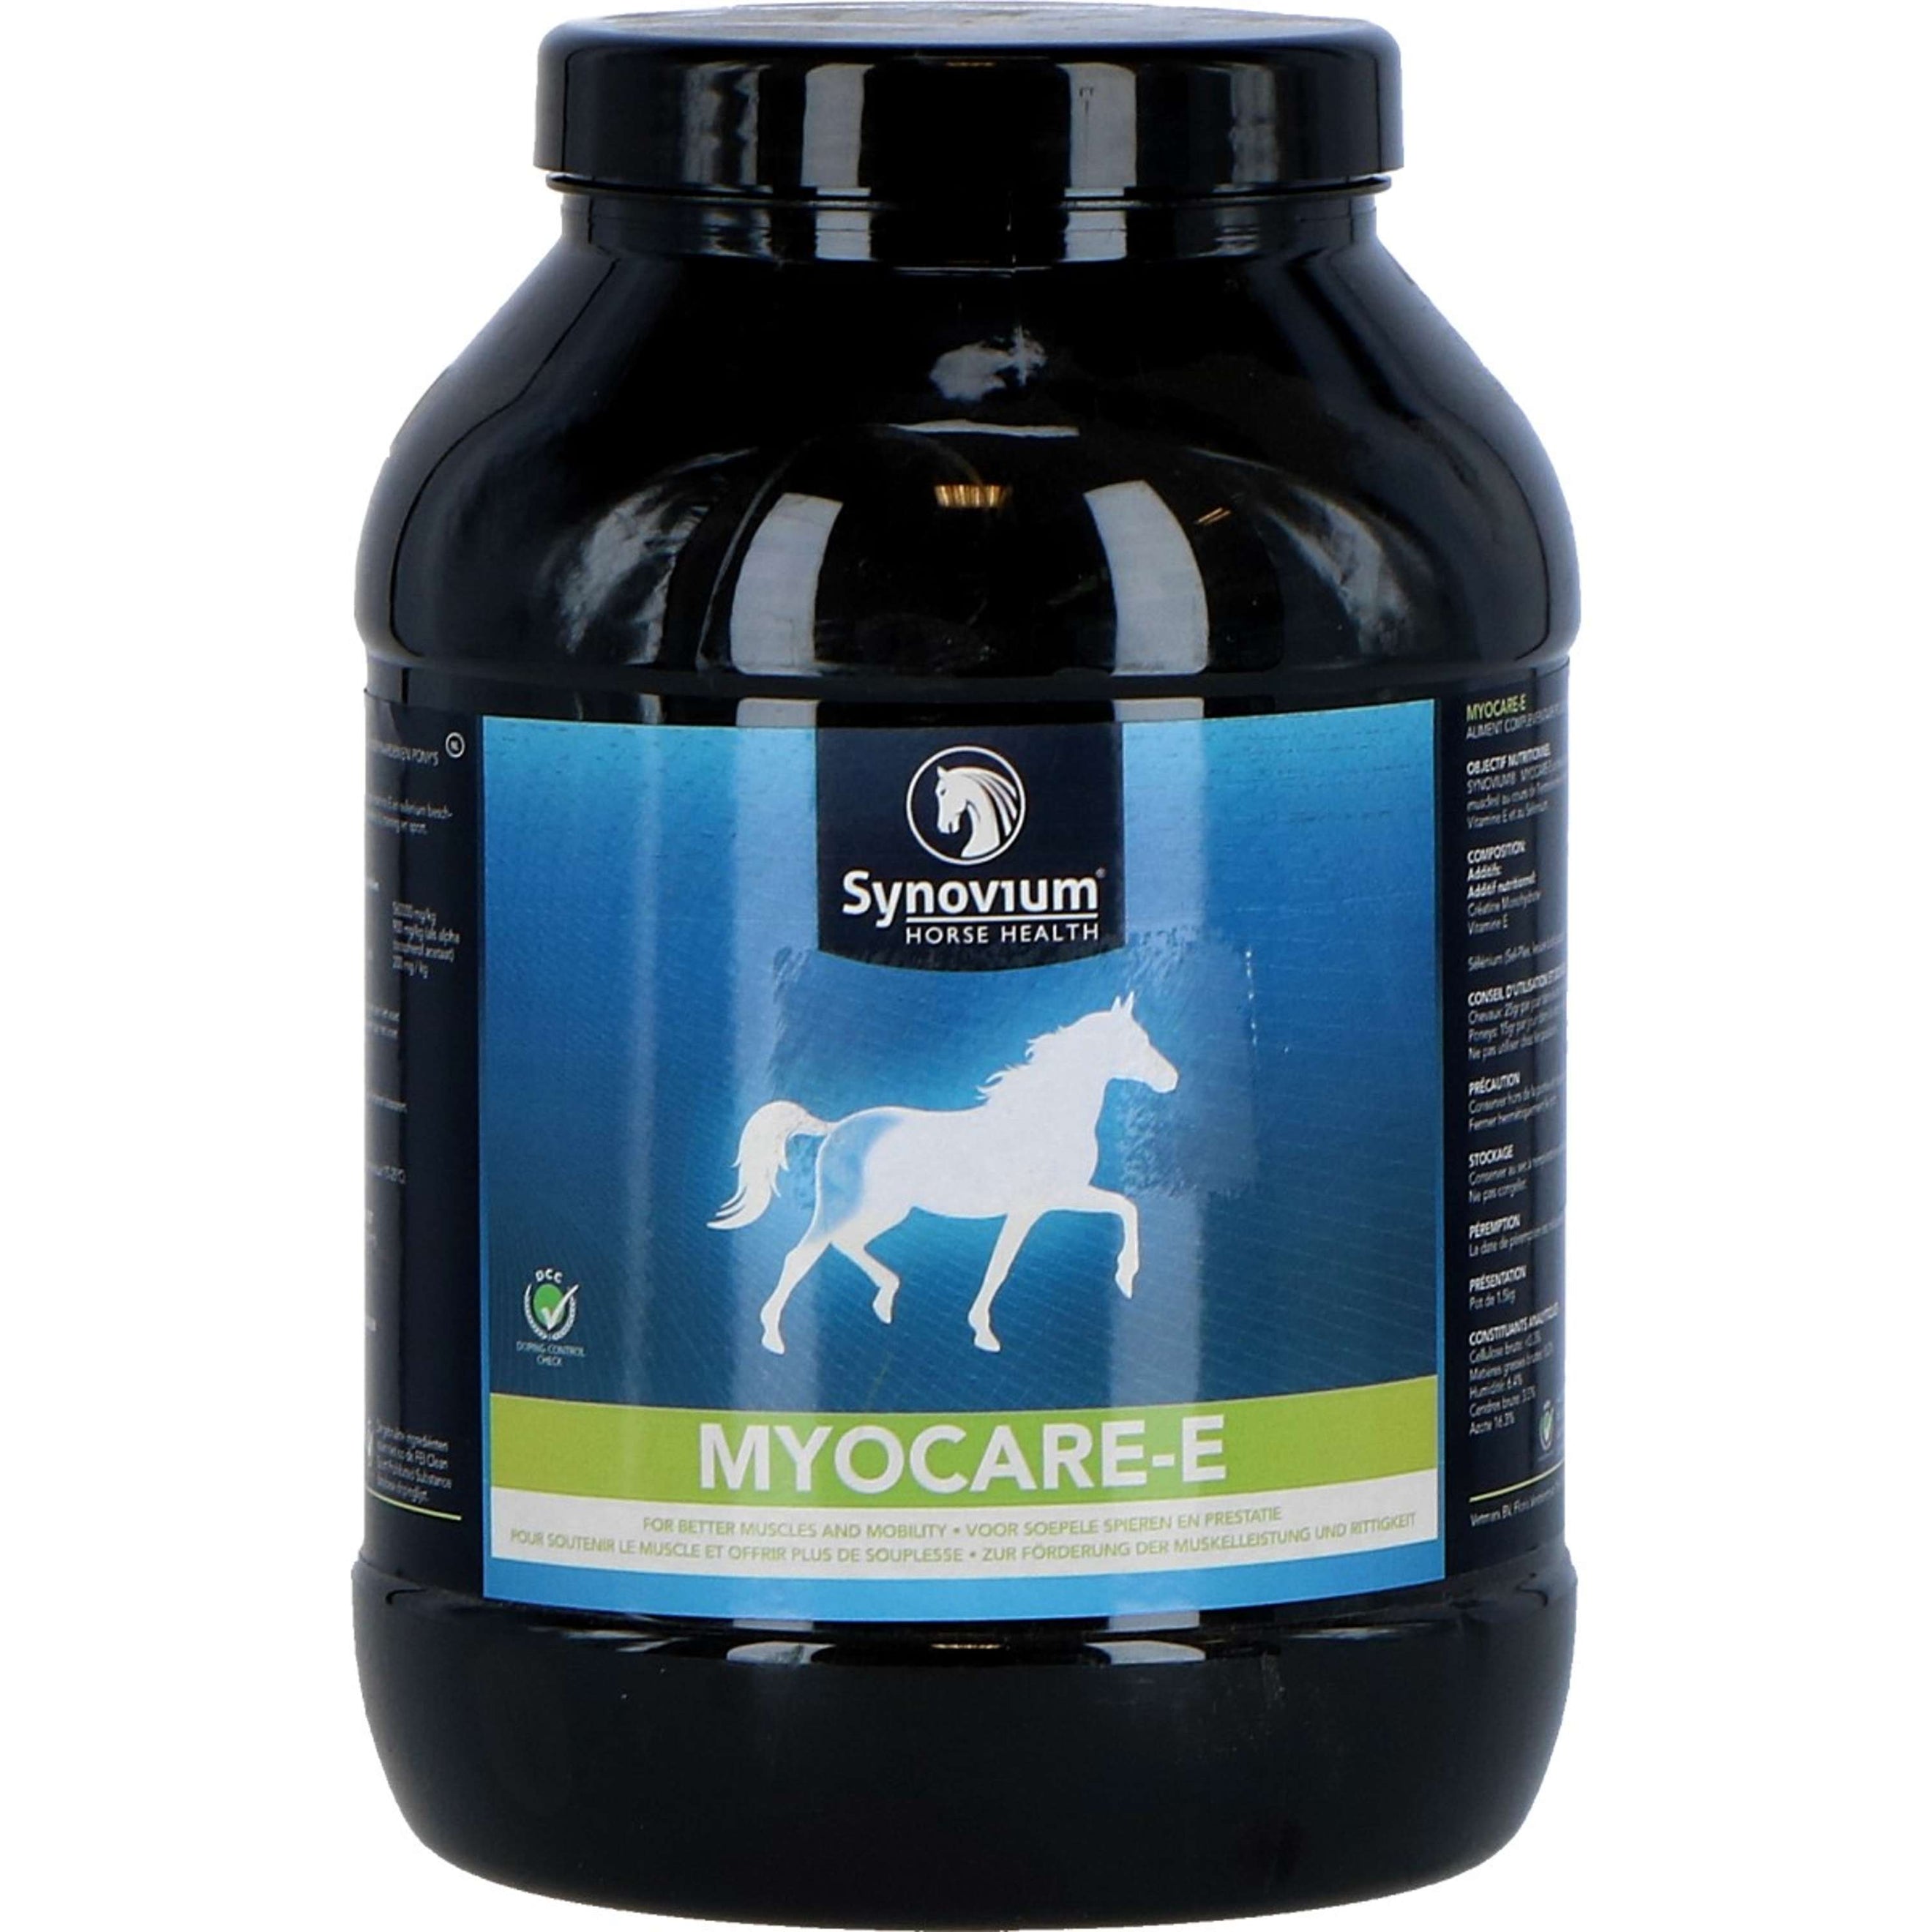 Synovium Mydocare-E